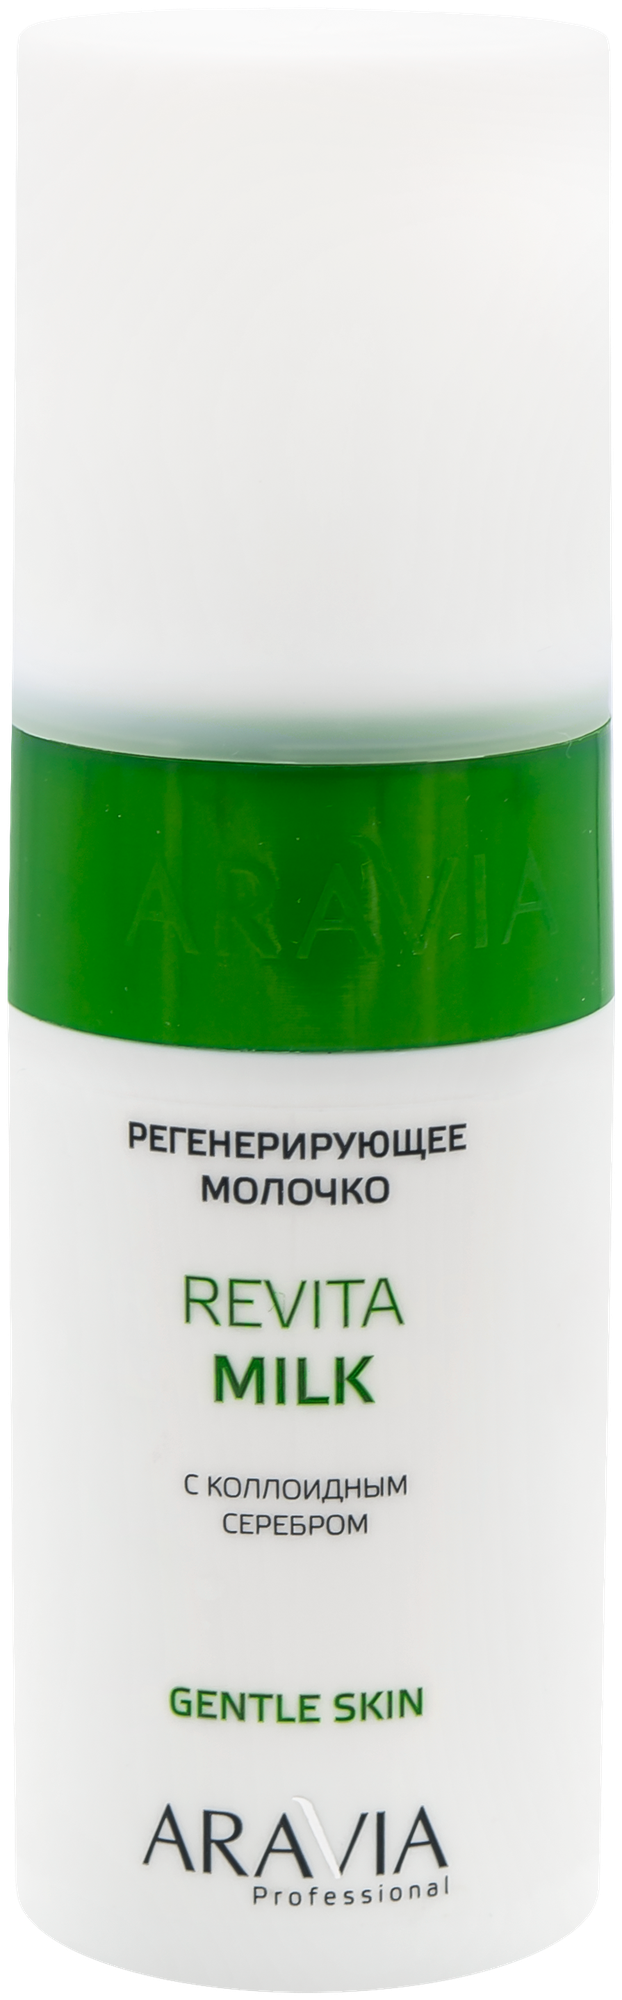 ARAVIA Молочко для лица и тела Professional регенерирующее с коллоидным серебром Revita Milk